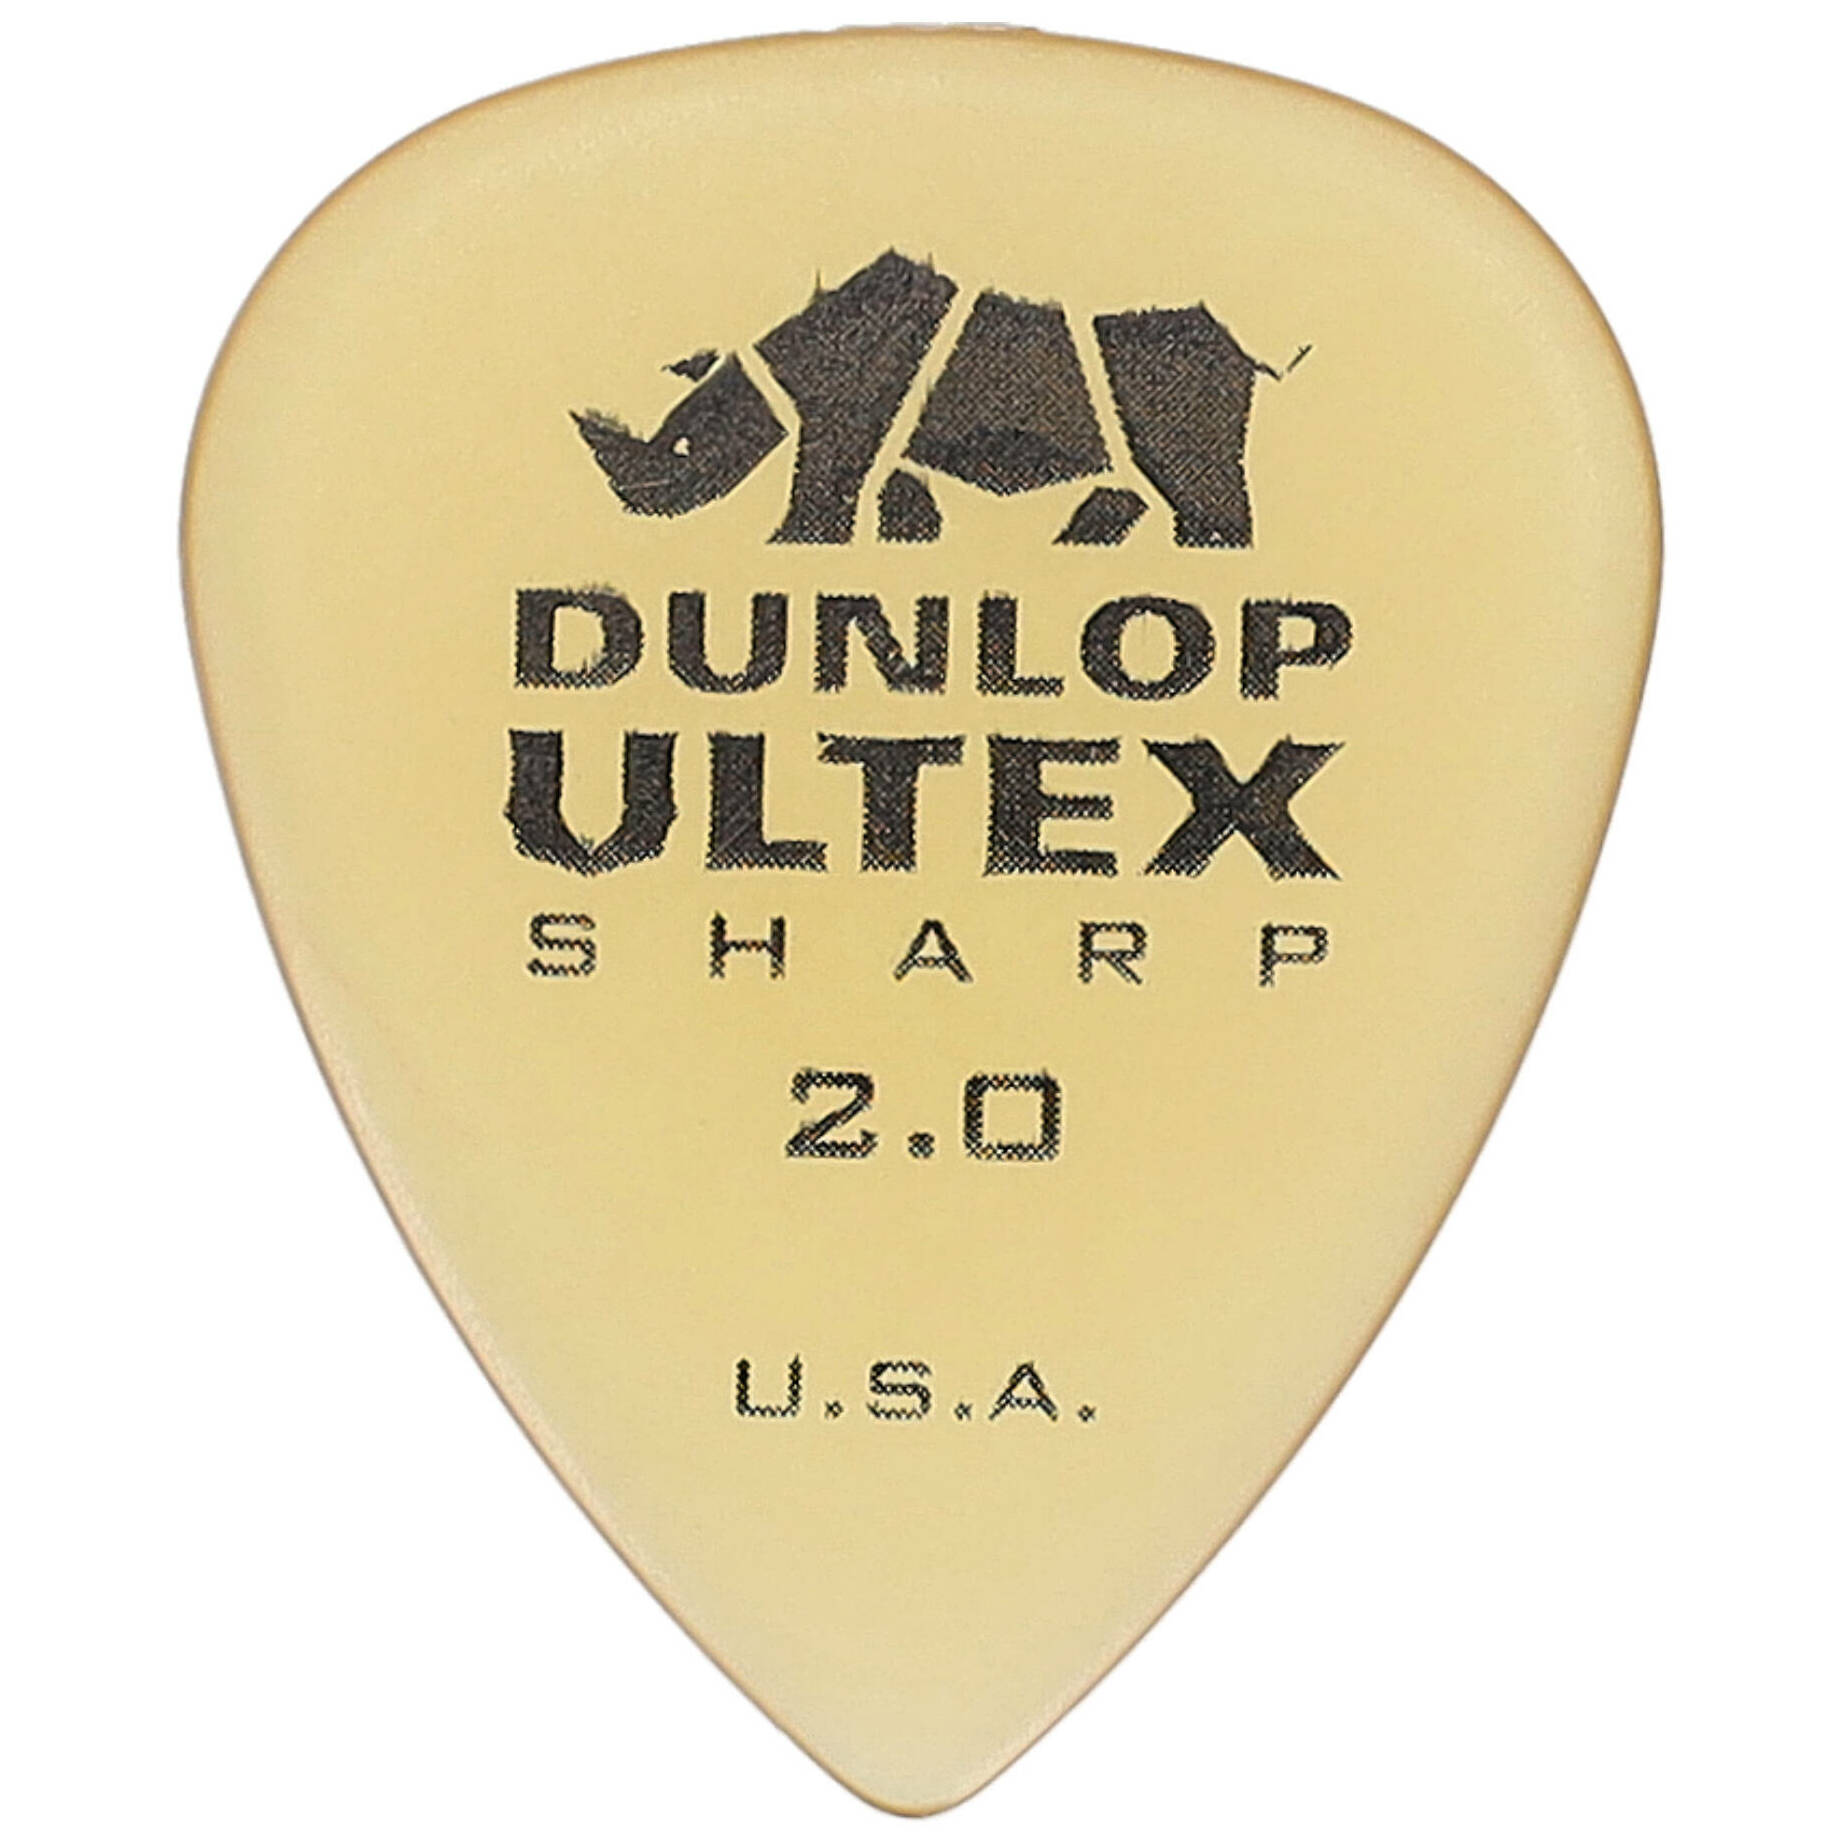 Dunlop Ultex Sharp 2.00